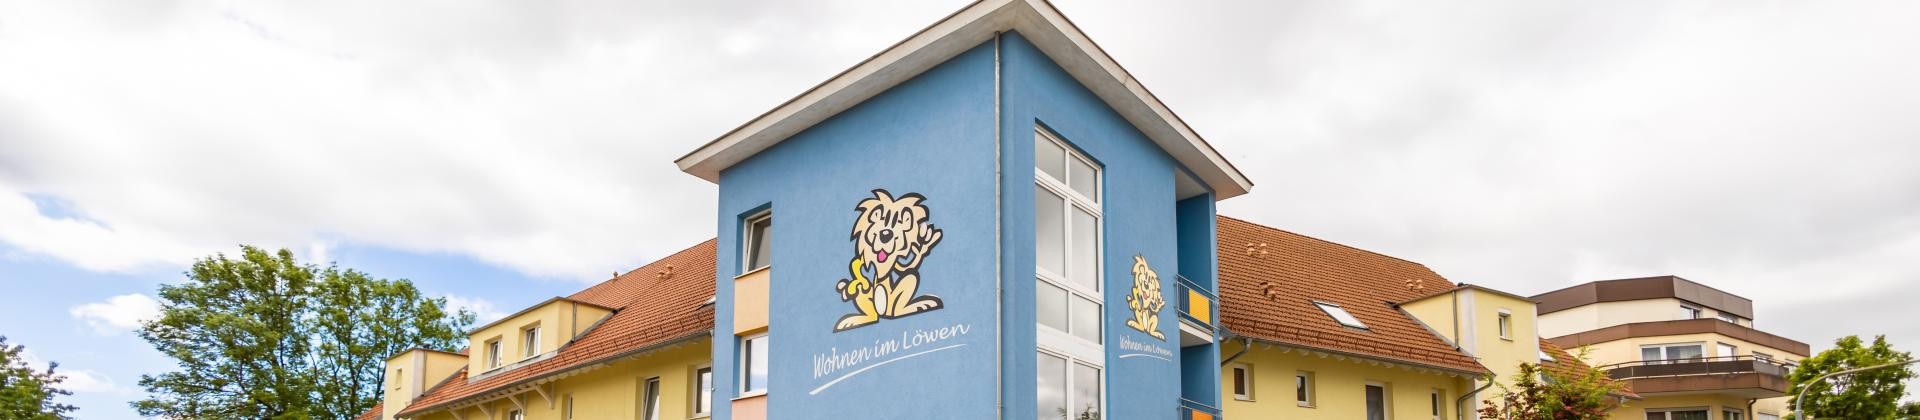 Wohnanlage Löwen von außen. Blau-gelbes Gebäude mit dem Logo der Wohnanlage dem "Löwen"